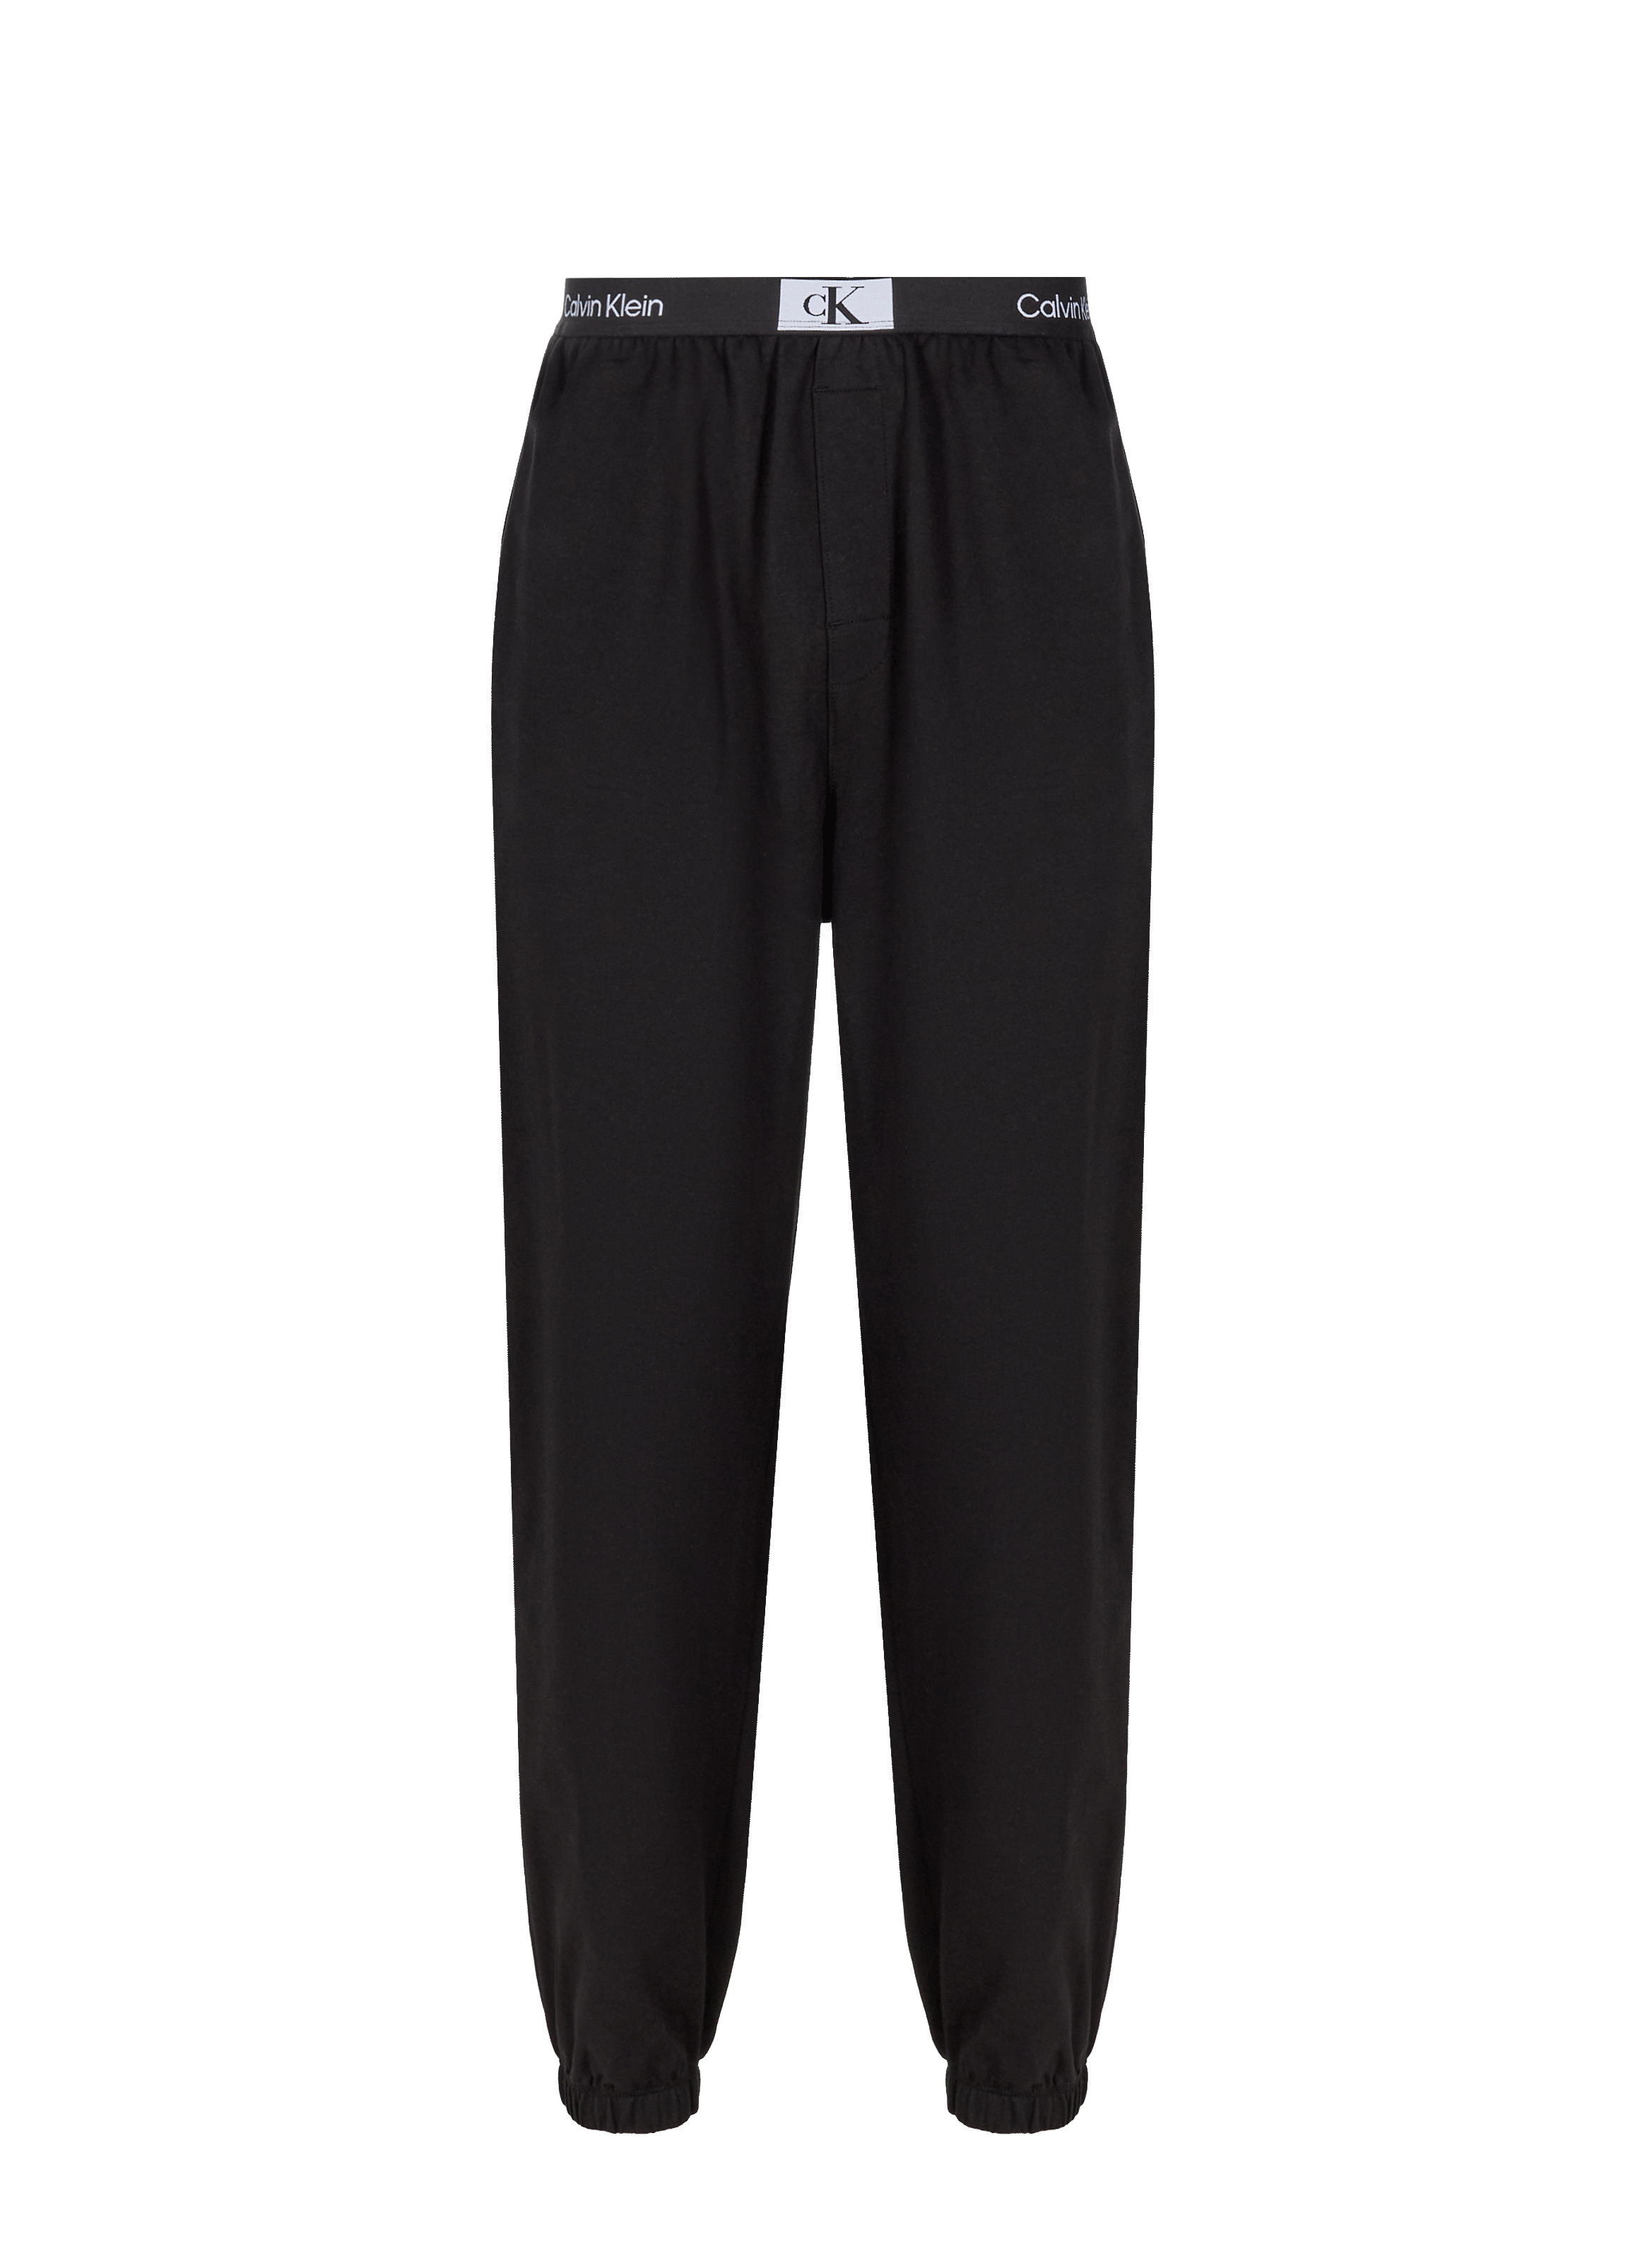 Calvin Klein Men's Cotton CK Pyjama Bottom Pants Black Plaid Check XL RRP  £45 | eBay